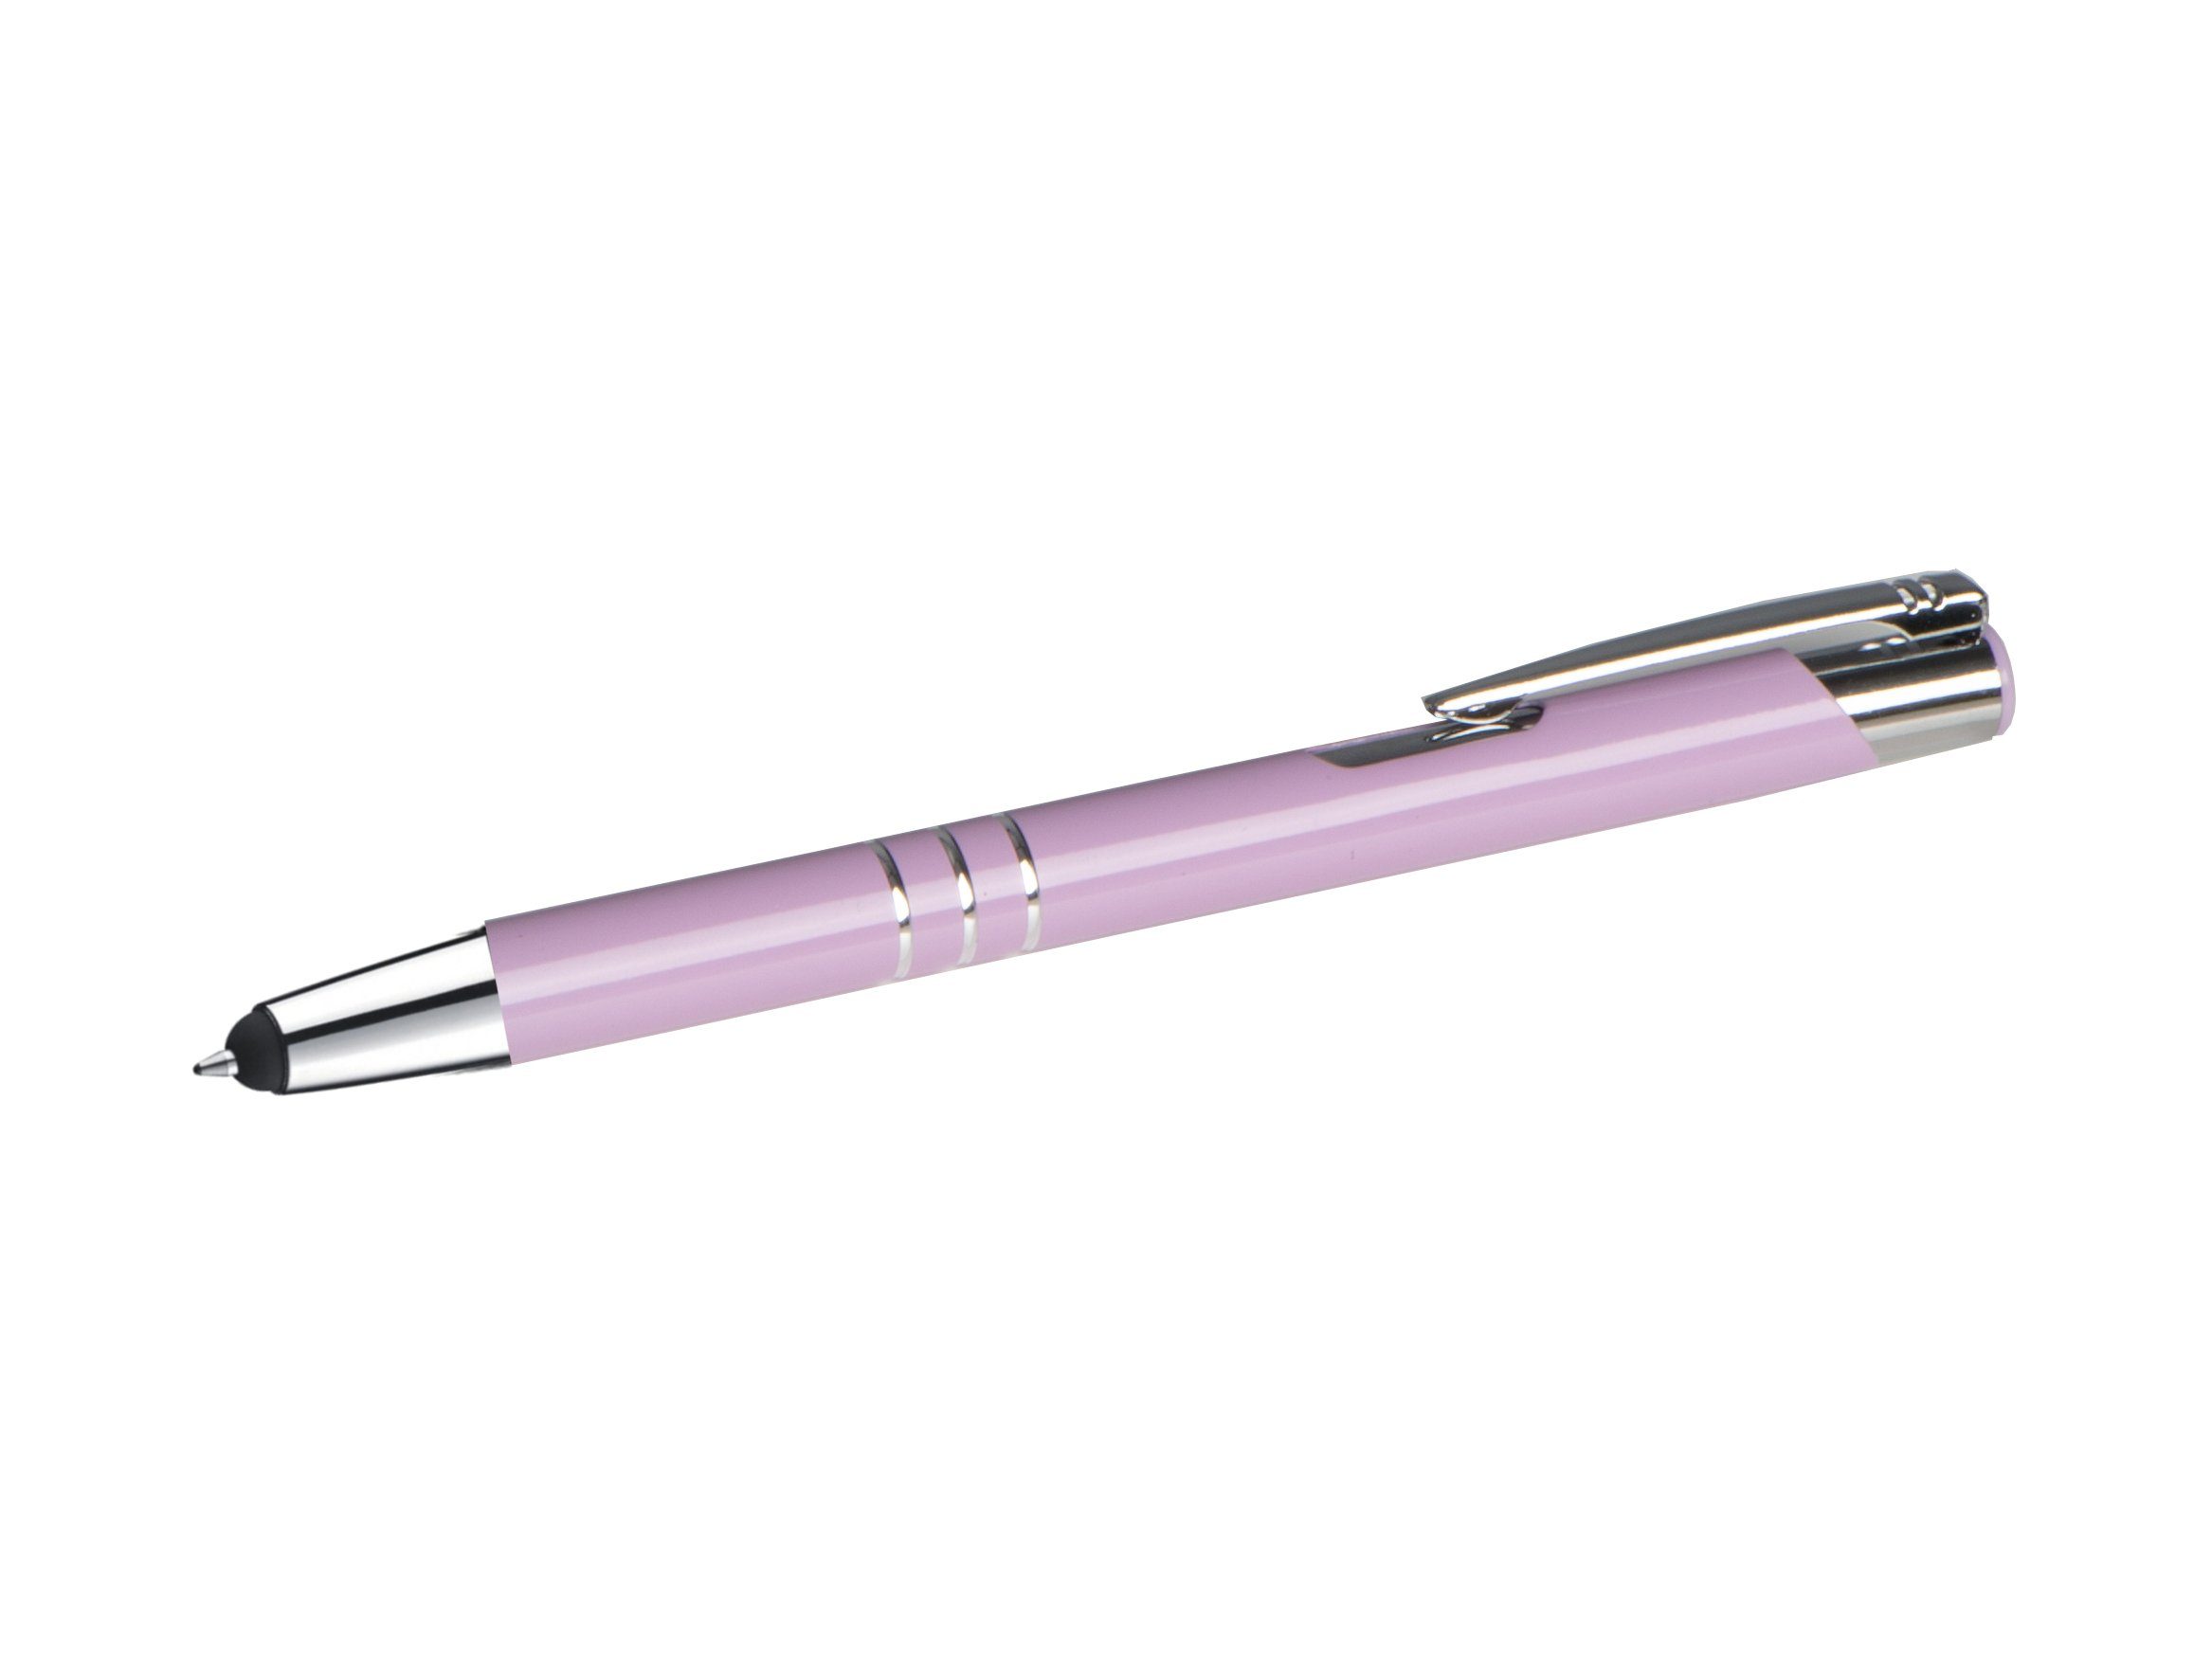 Livepac Office Kugelschreiber 10 Touchpen Kugelschreiber aus Metall / Farbe: pastell lila